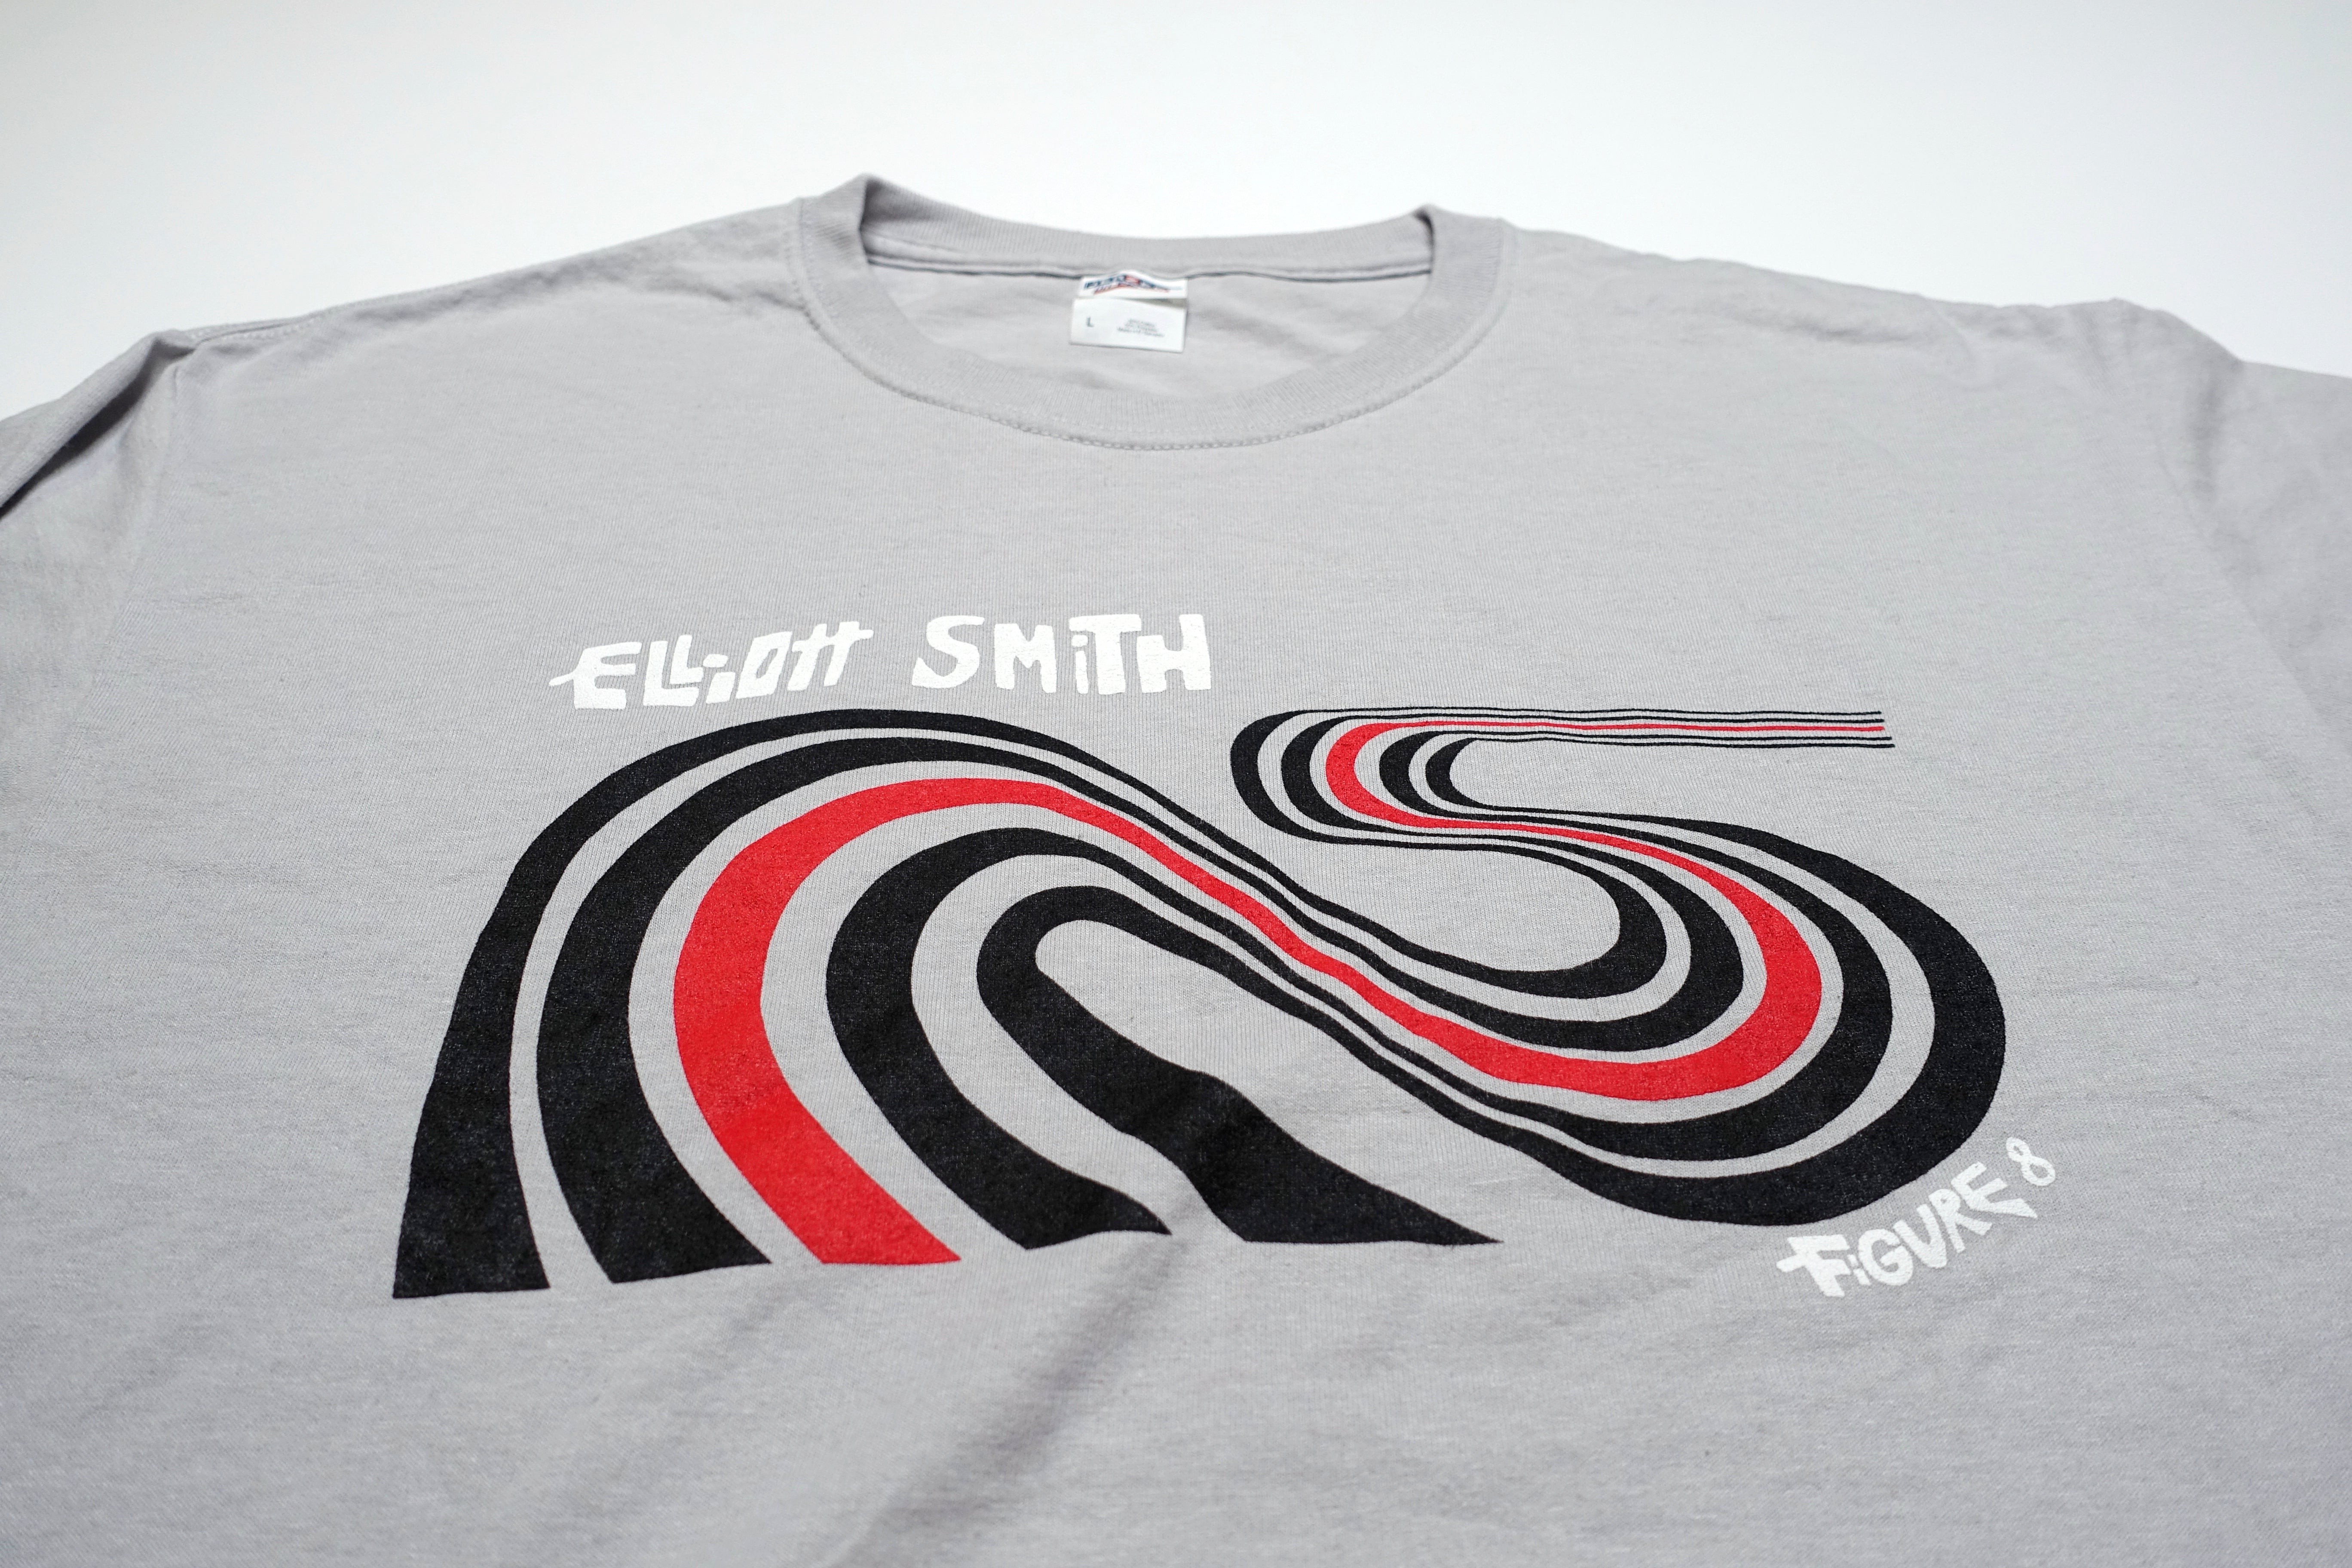 Elliott Smith - Figure 8 (Homemade) Shirt Size Large